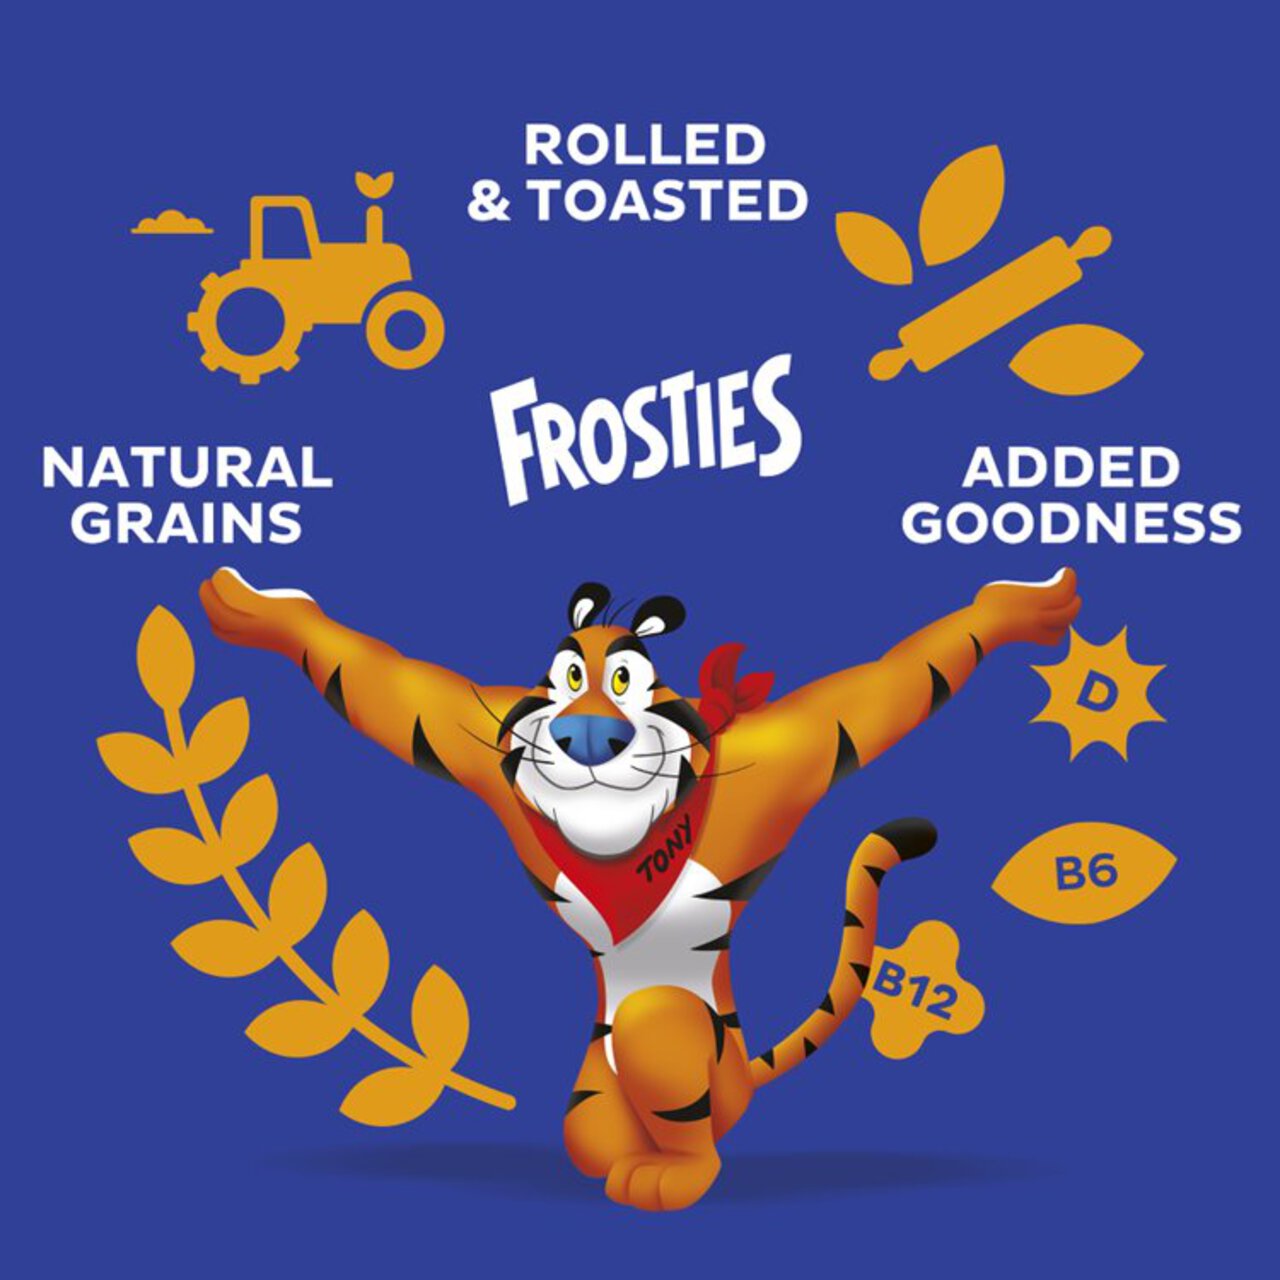 Kellogg's Frosties Breakfast Cereal 470g 470g